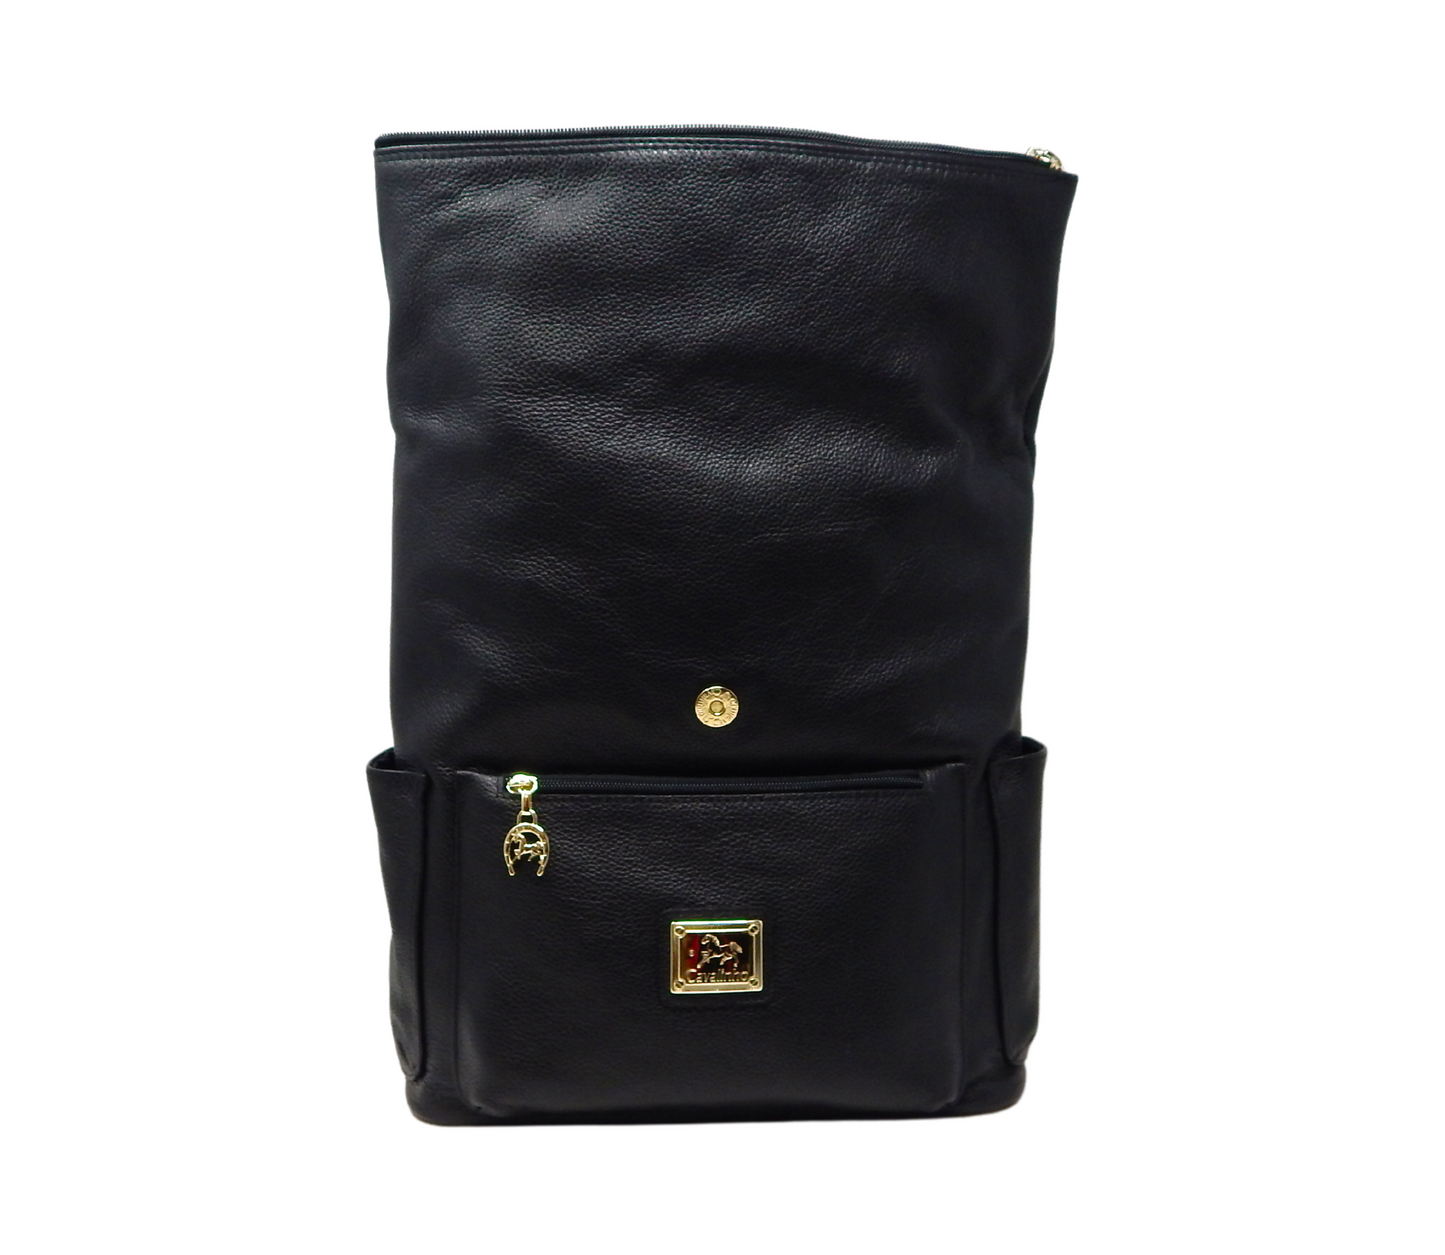 #color_ Black | Cavalinho Muse Leather Backpack - Black - 18300415.01_4